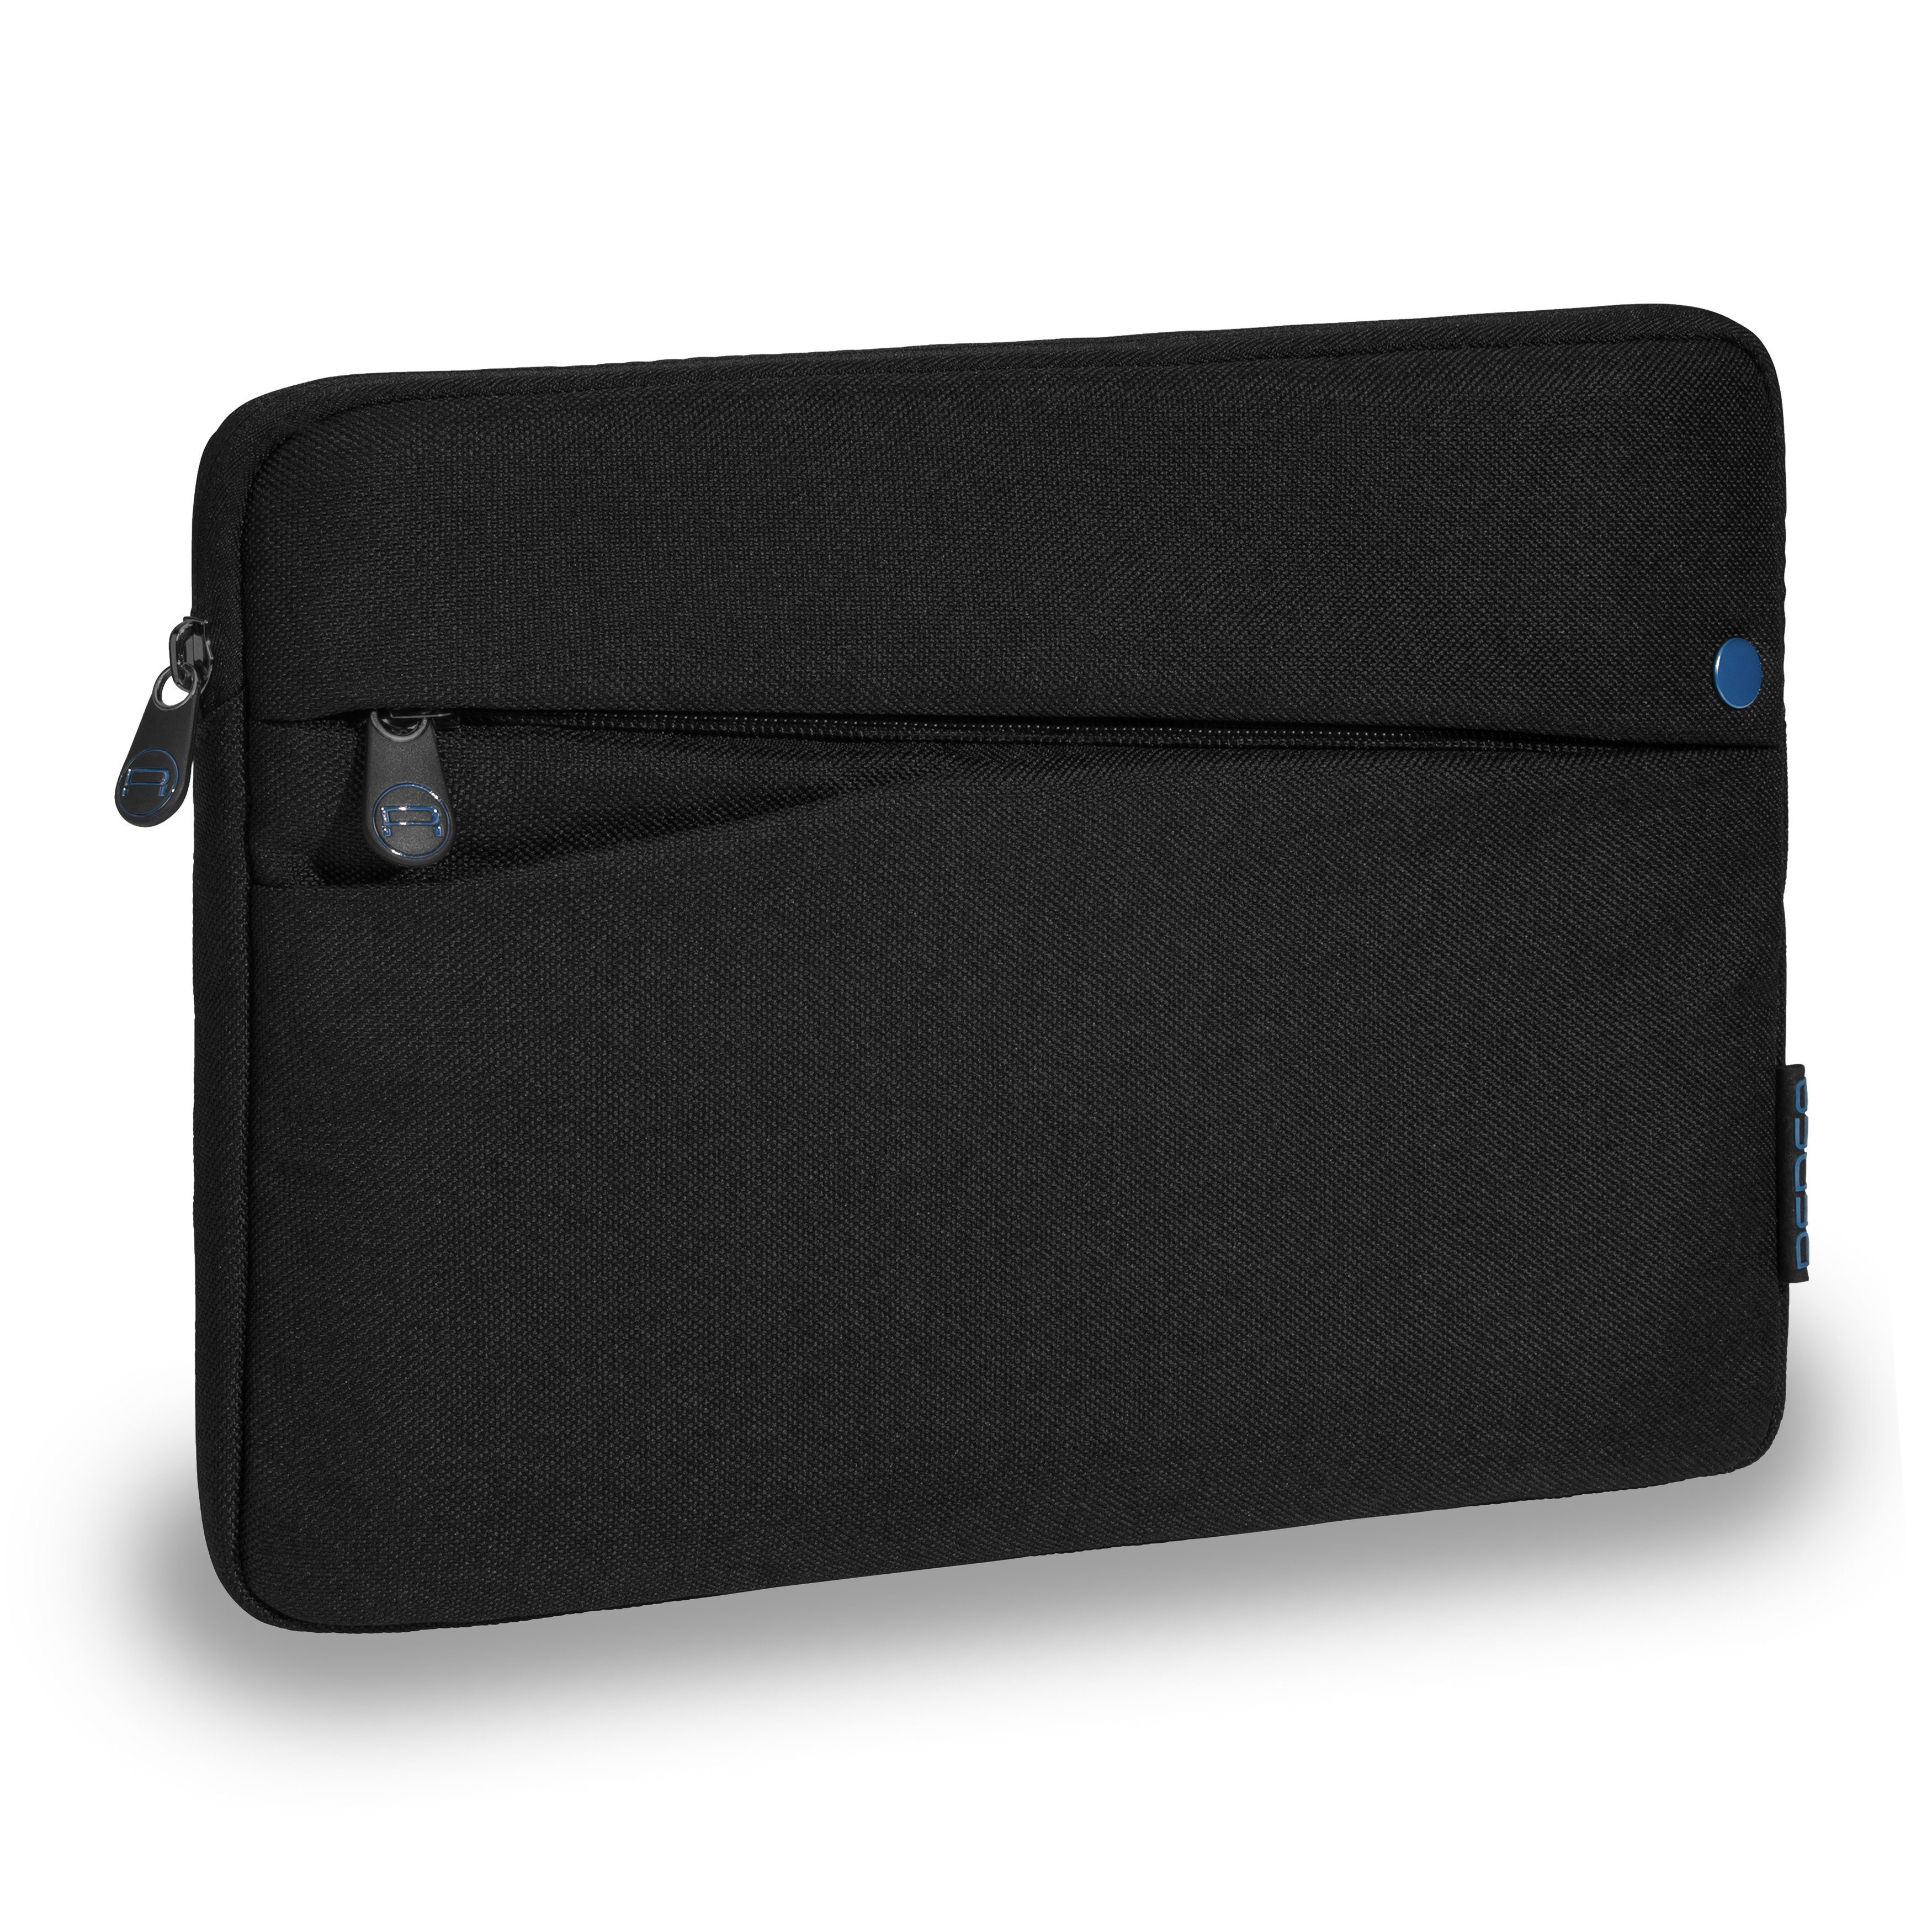 PEDEA Tablettasche FASHION (10,1 Zoll (25,7 cm), kompatible mit iPad, Huawei MatePad, Lenovo Tab, Samsung Galaxy Tab), Schutzhülle mit einer dicken Polsterung und weichem Innenfutter schwarz/blau